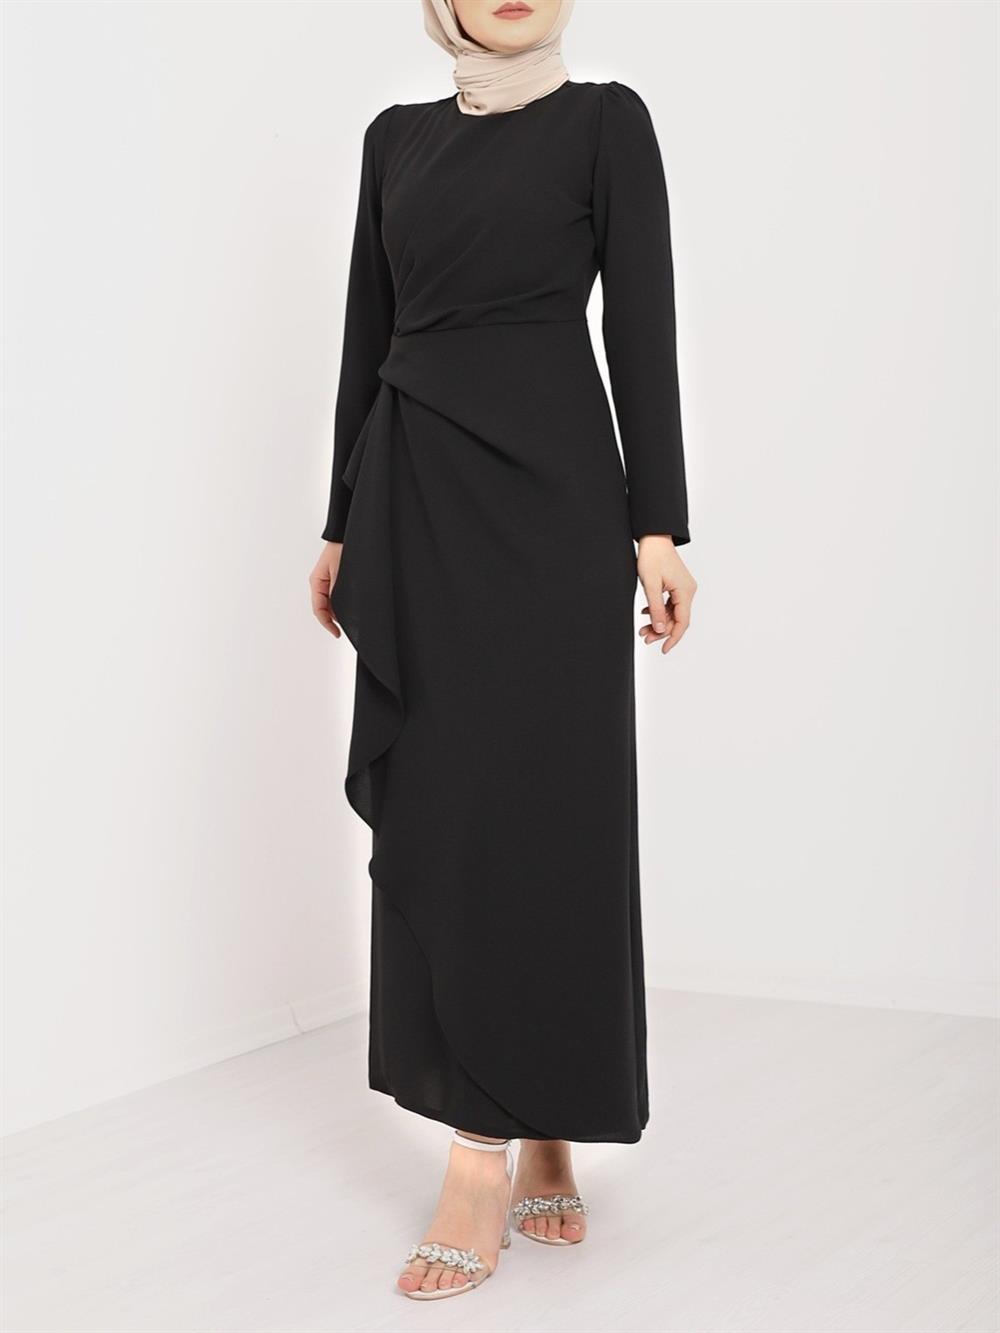 Its Allerli skirt Asymmetric Crepe Dress -Black